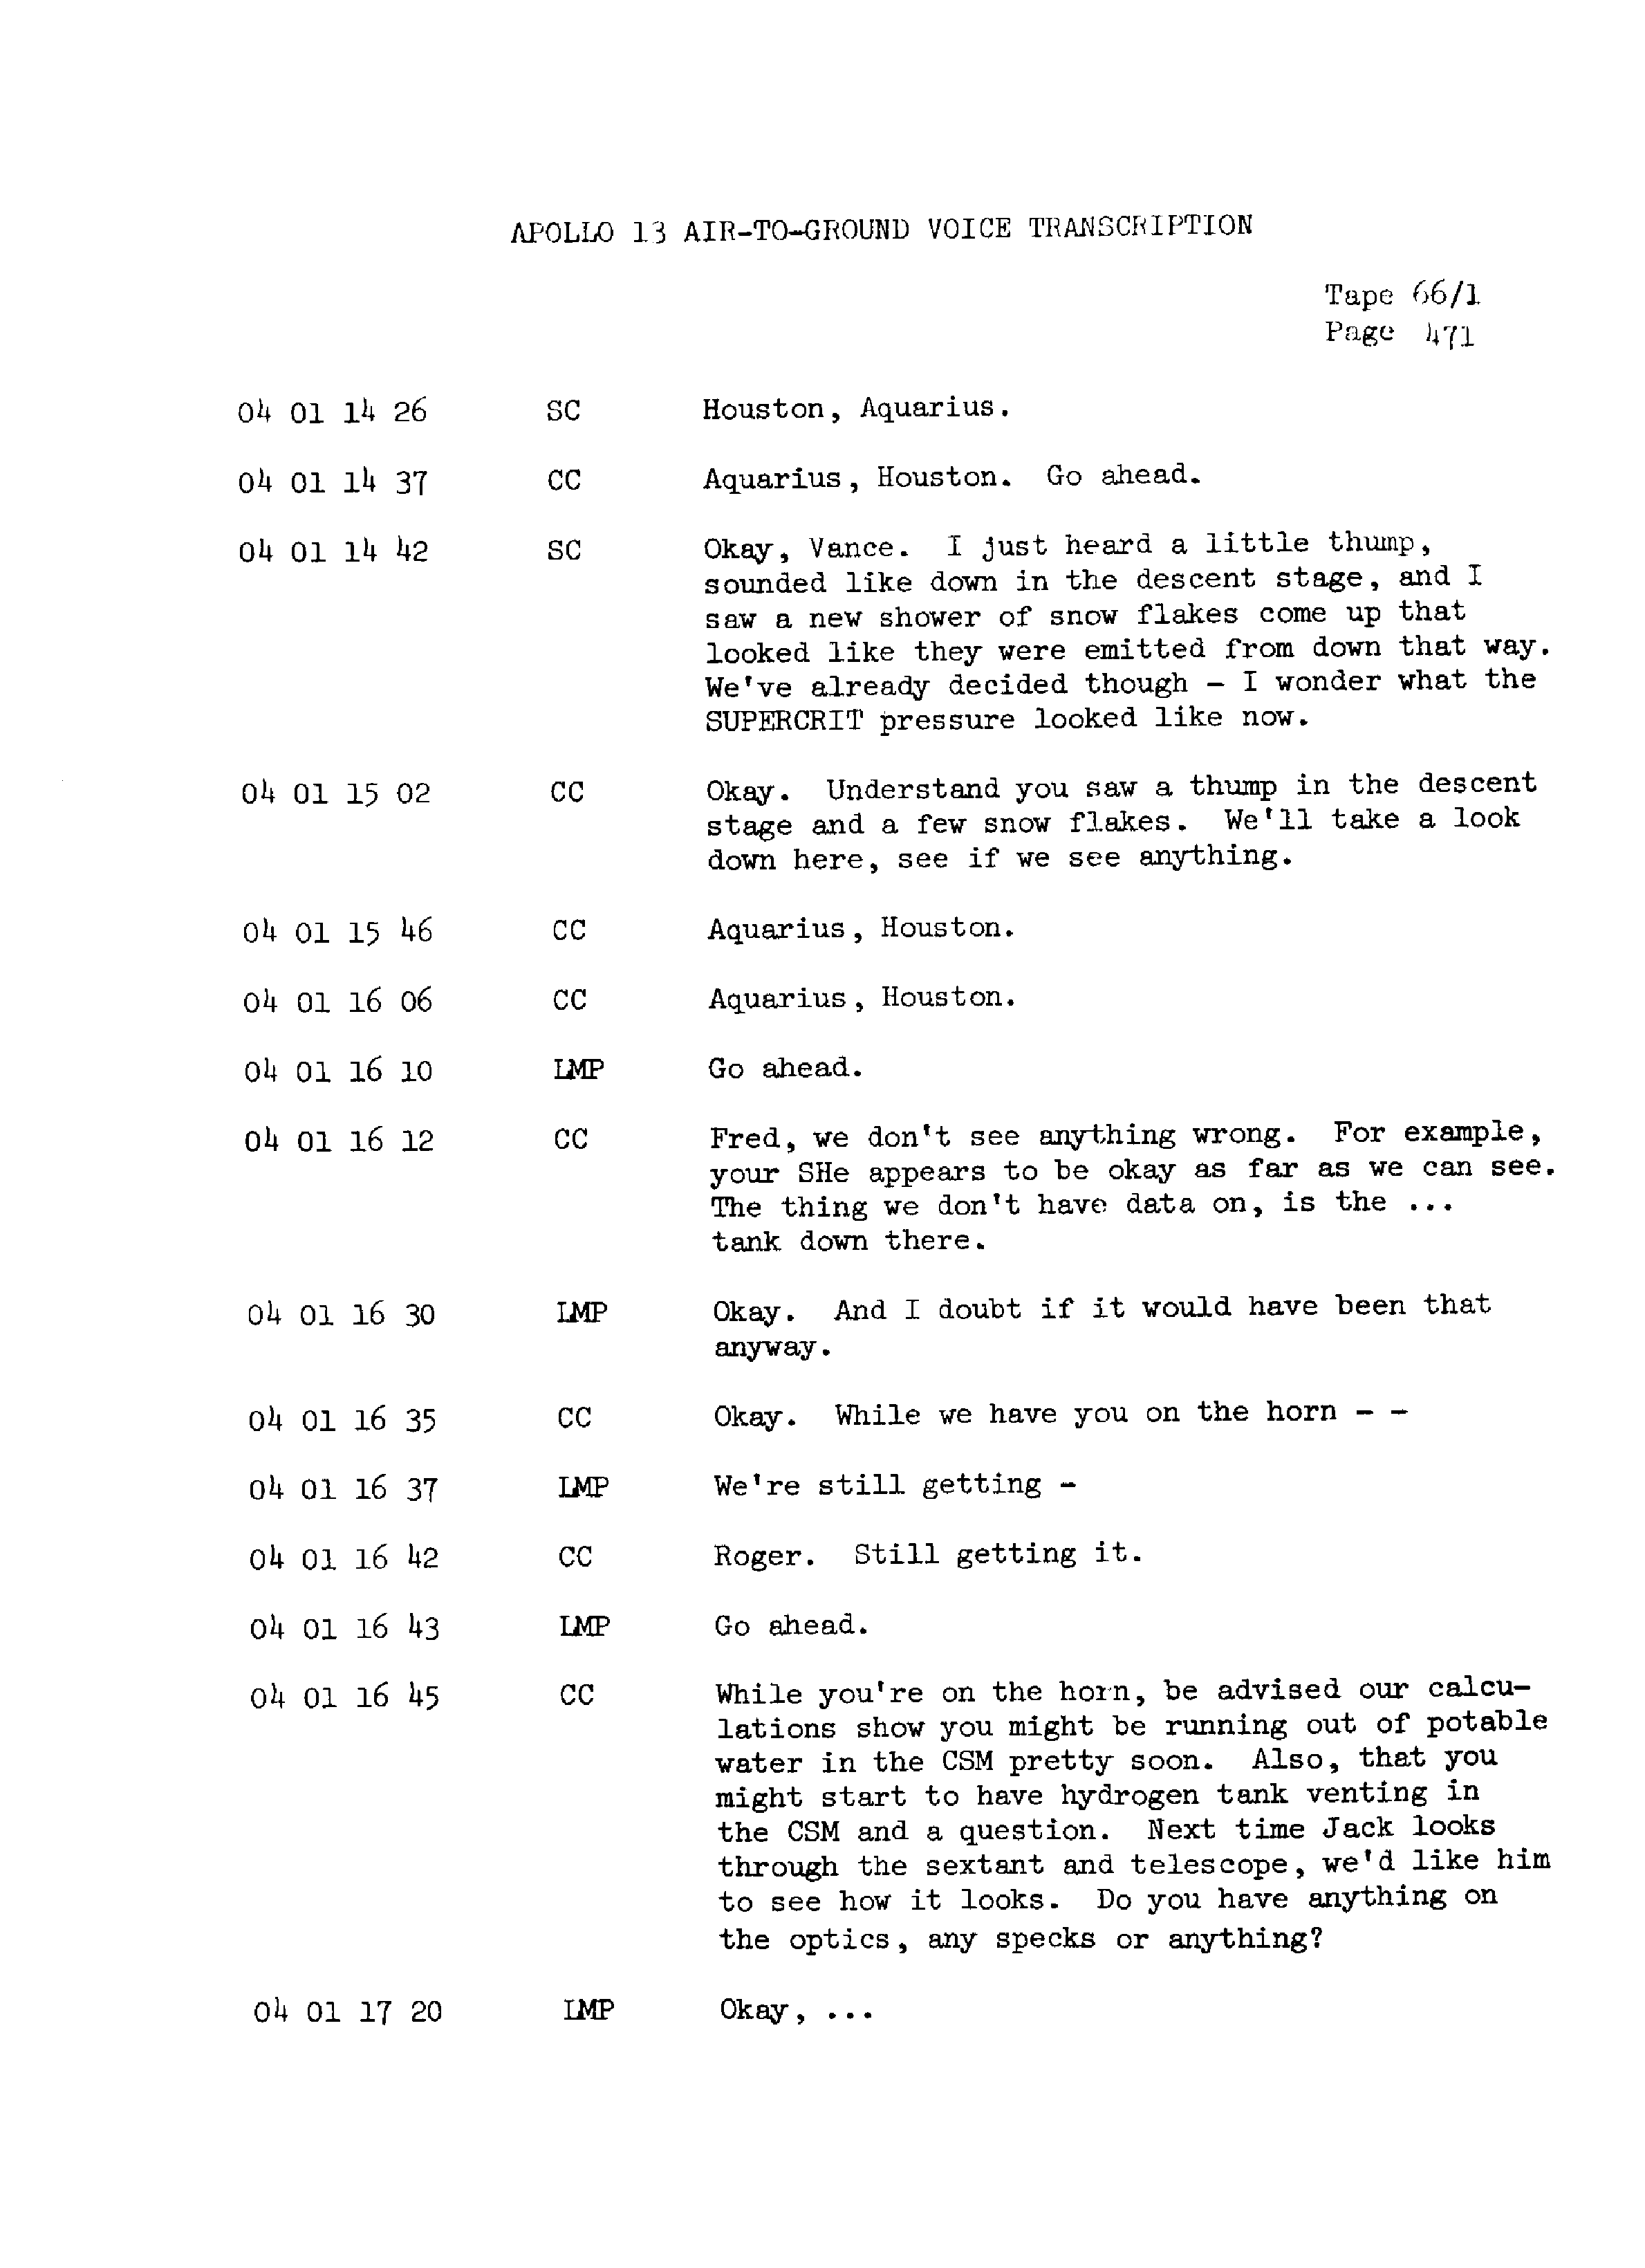 Page 478 of Apollo 13’s original transcript